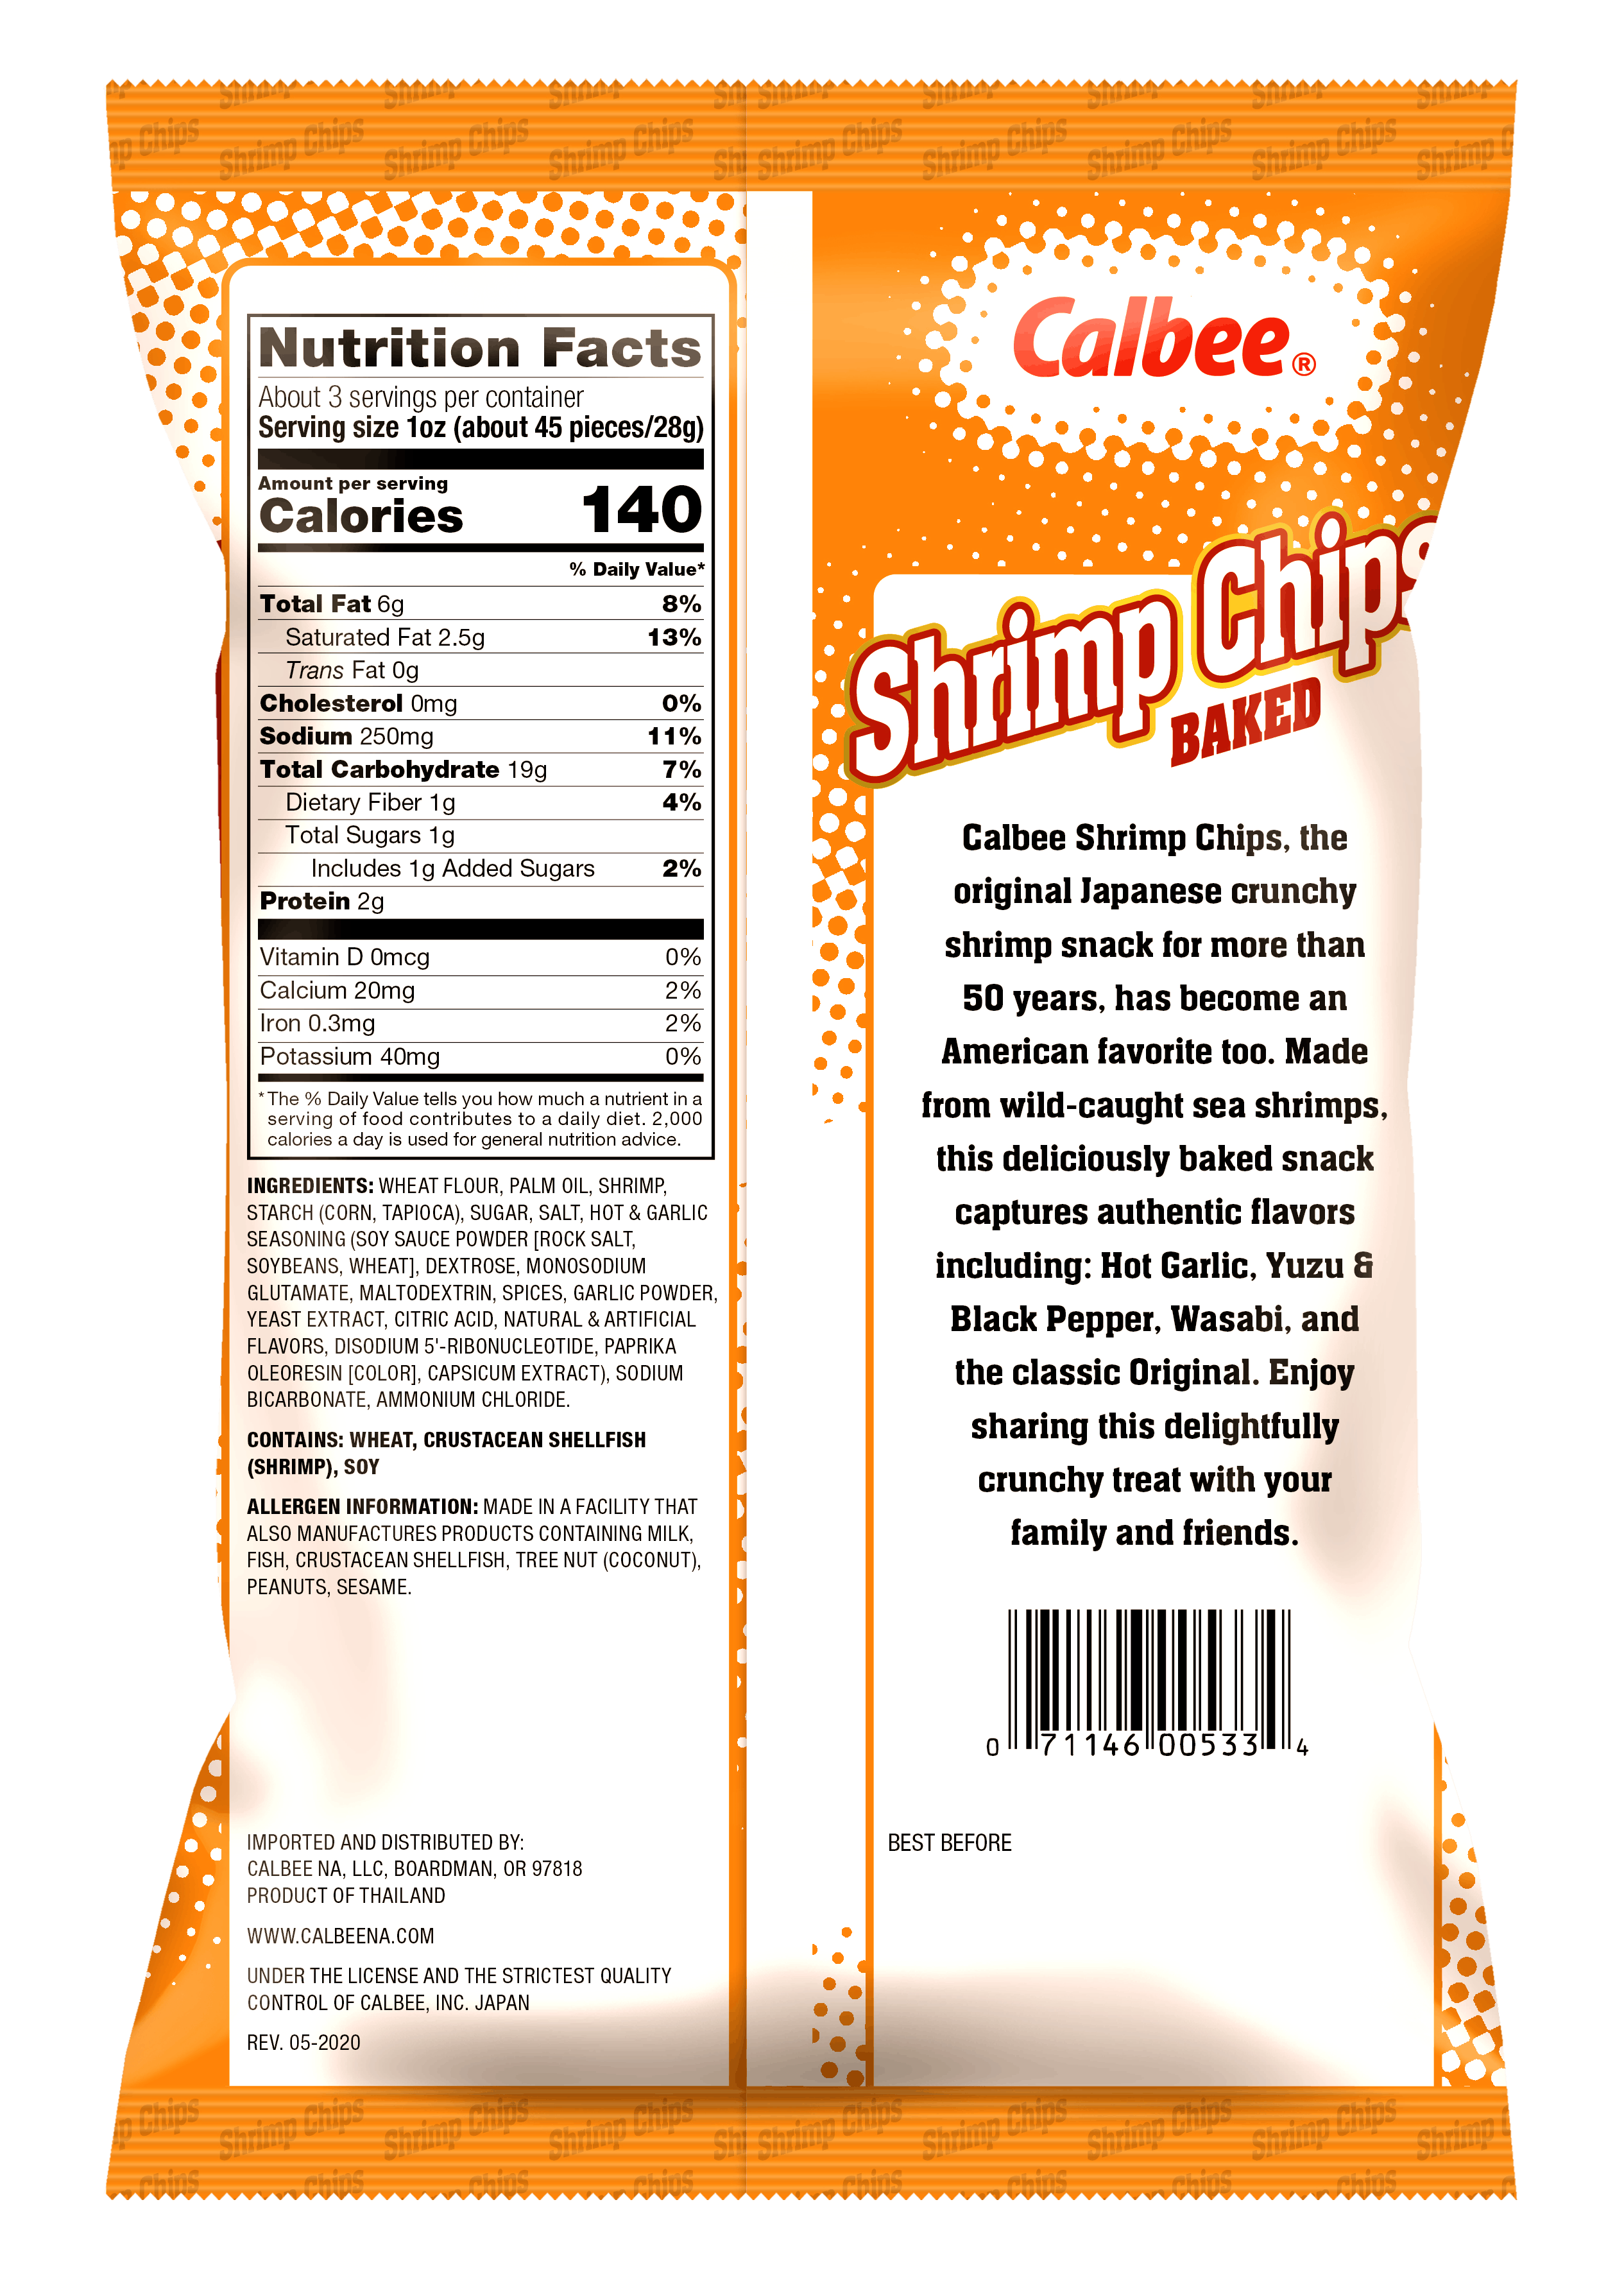 Shrimp Chips Hot Garlic - Back of Bag